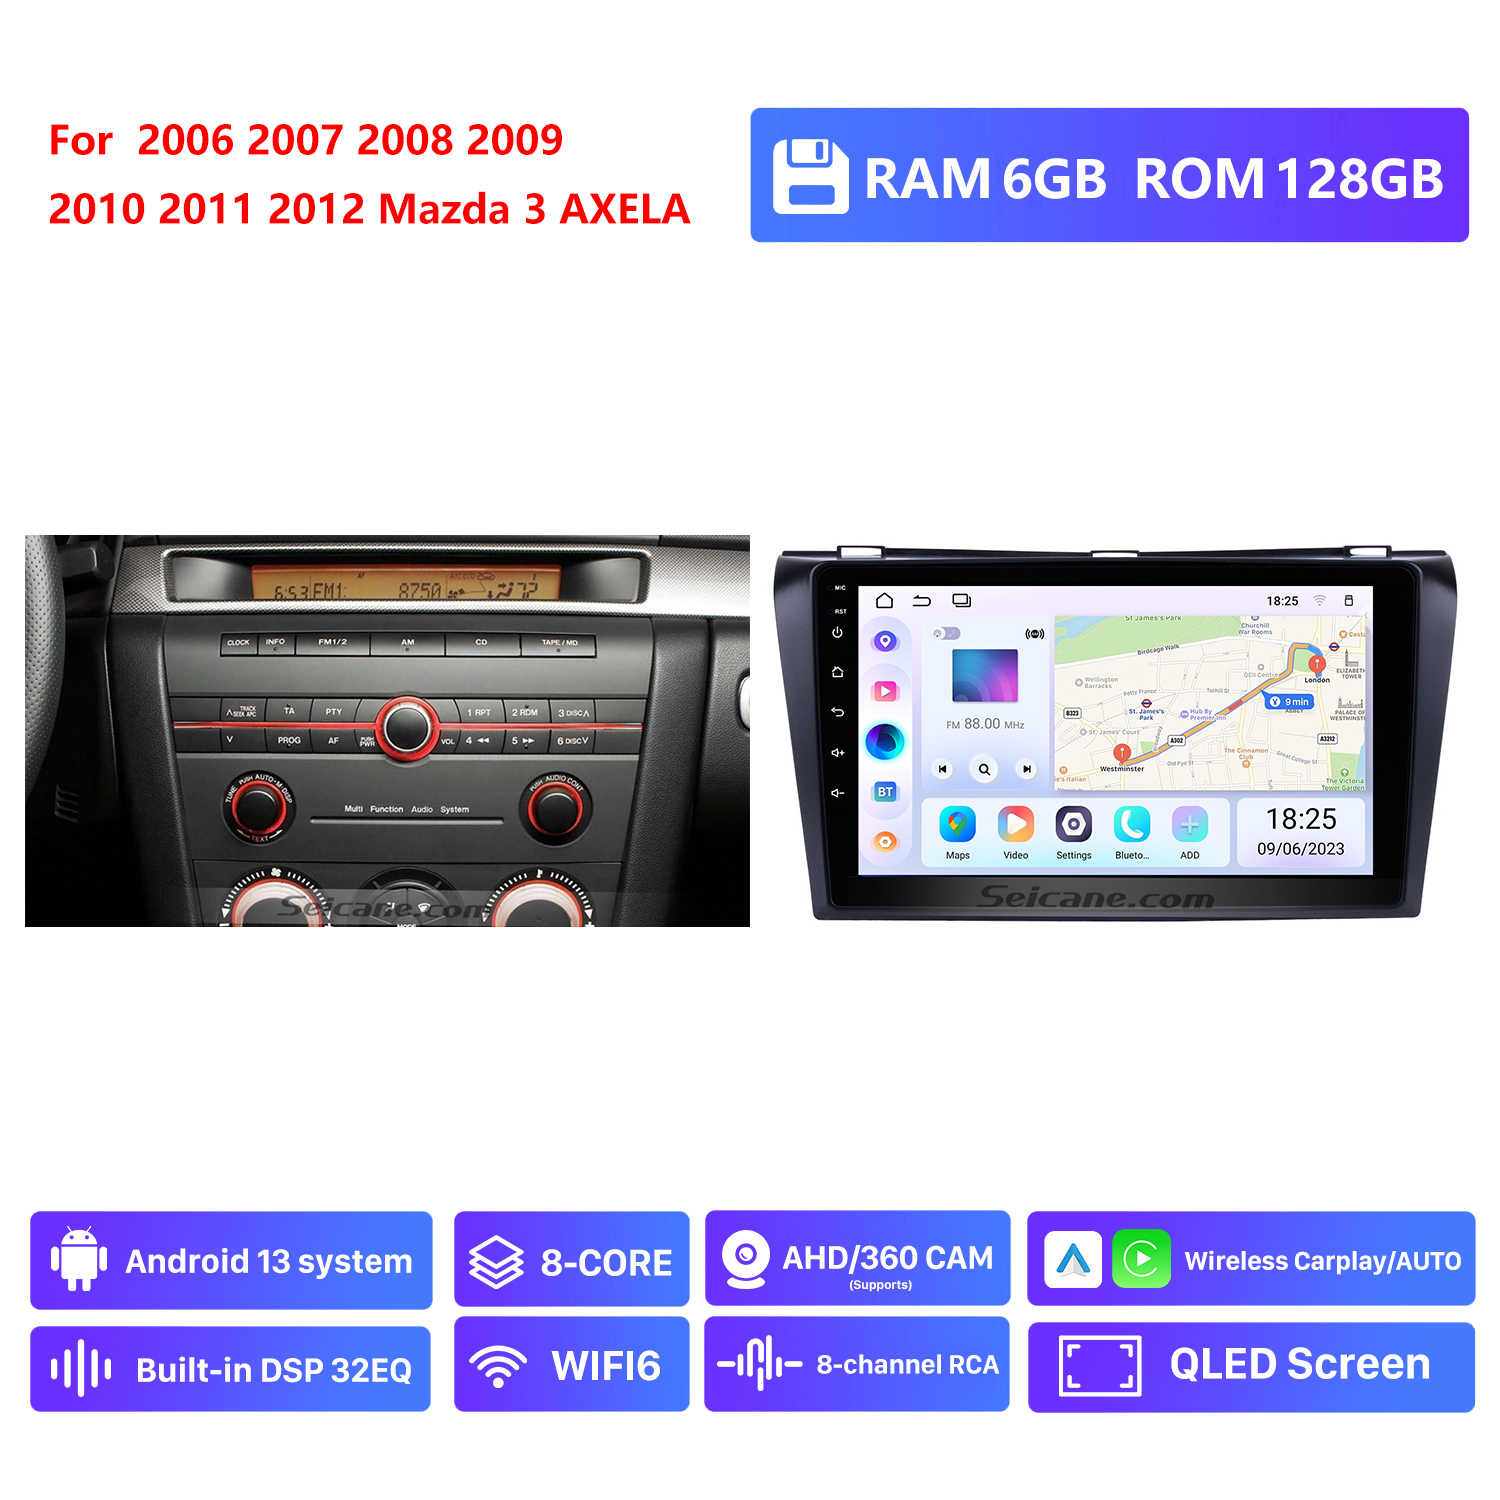 RAM 6G,ROM 128G